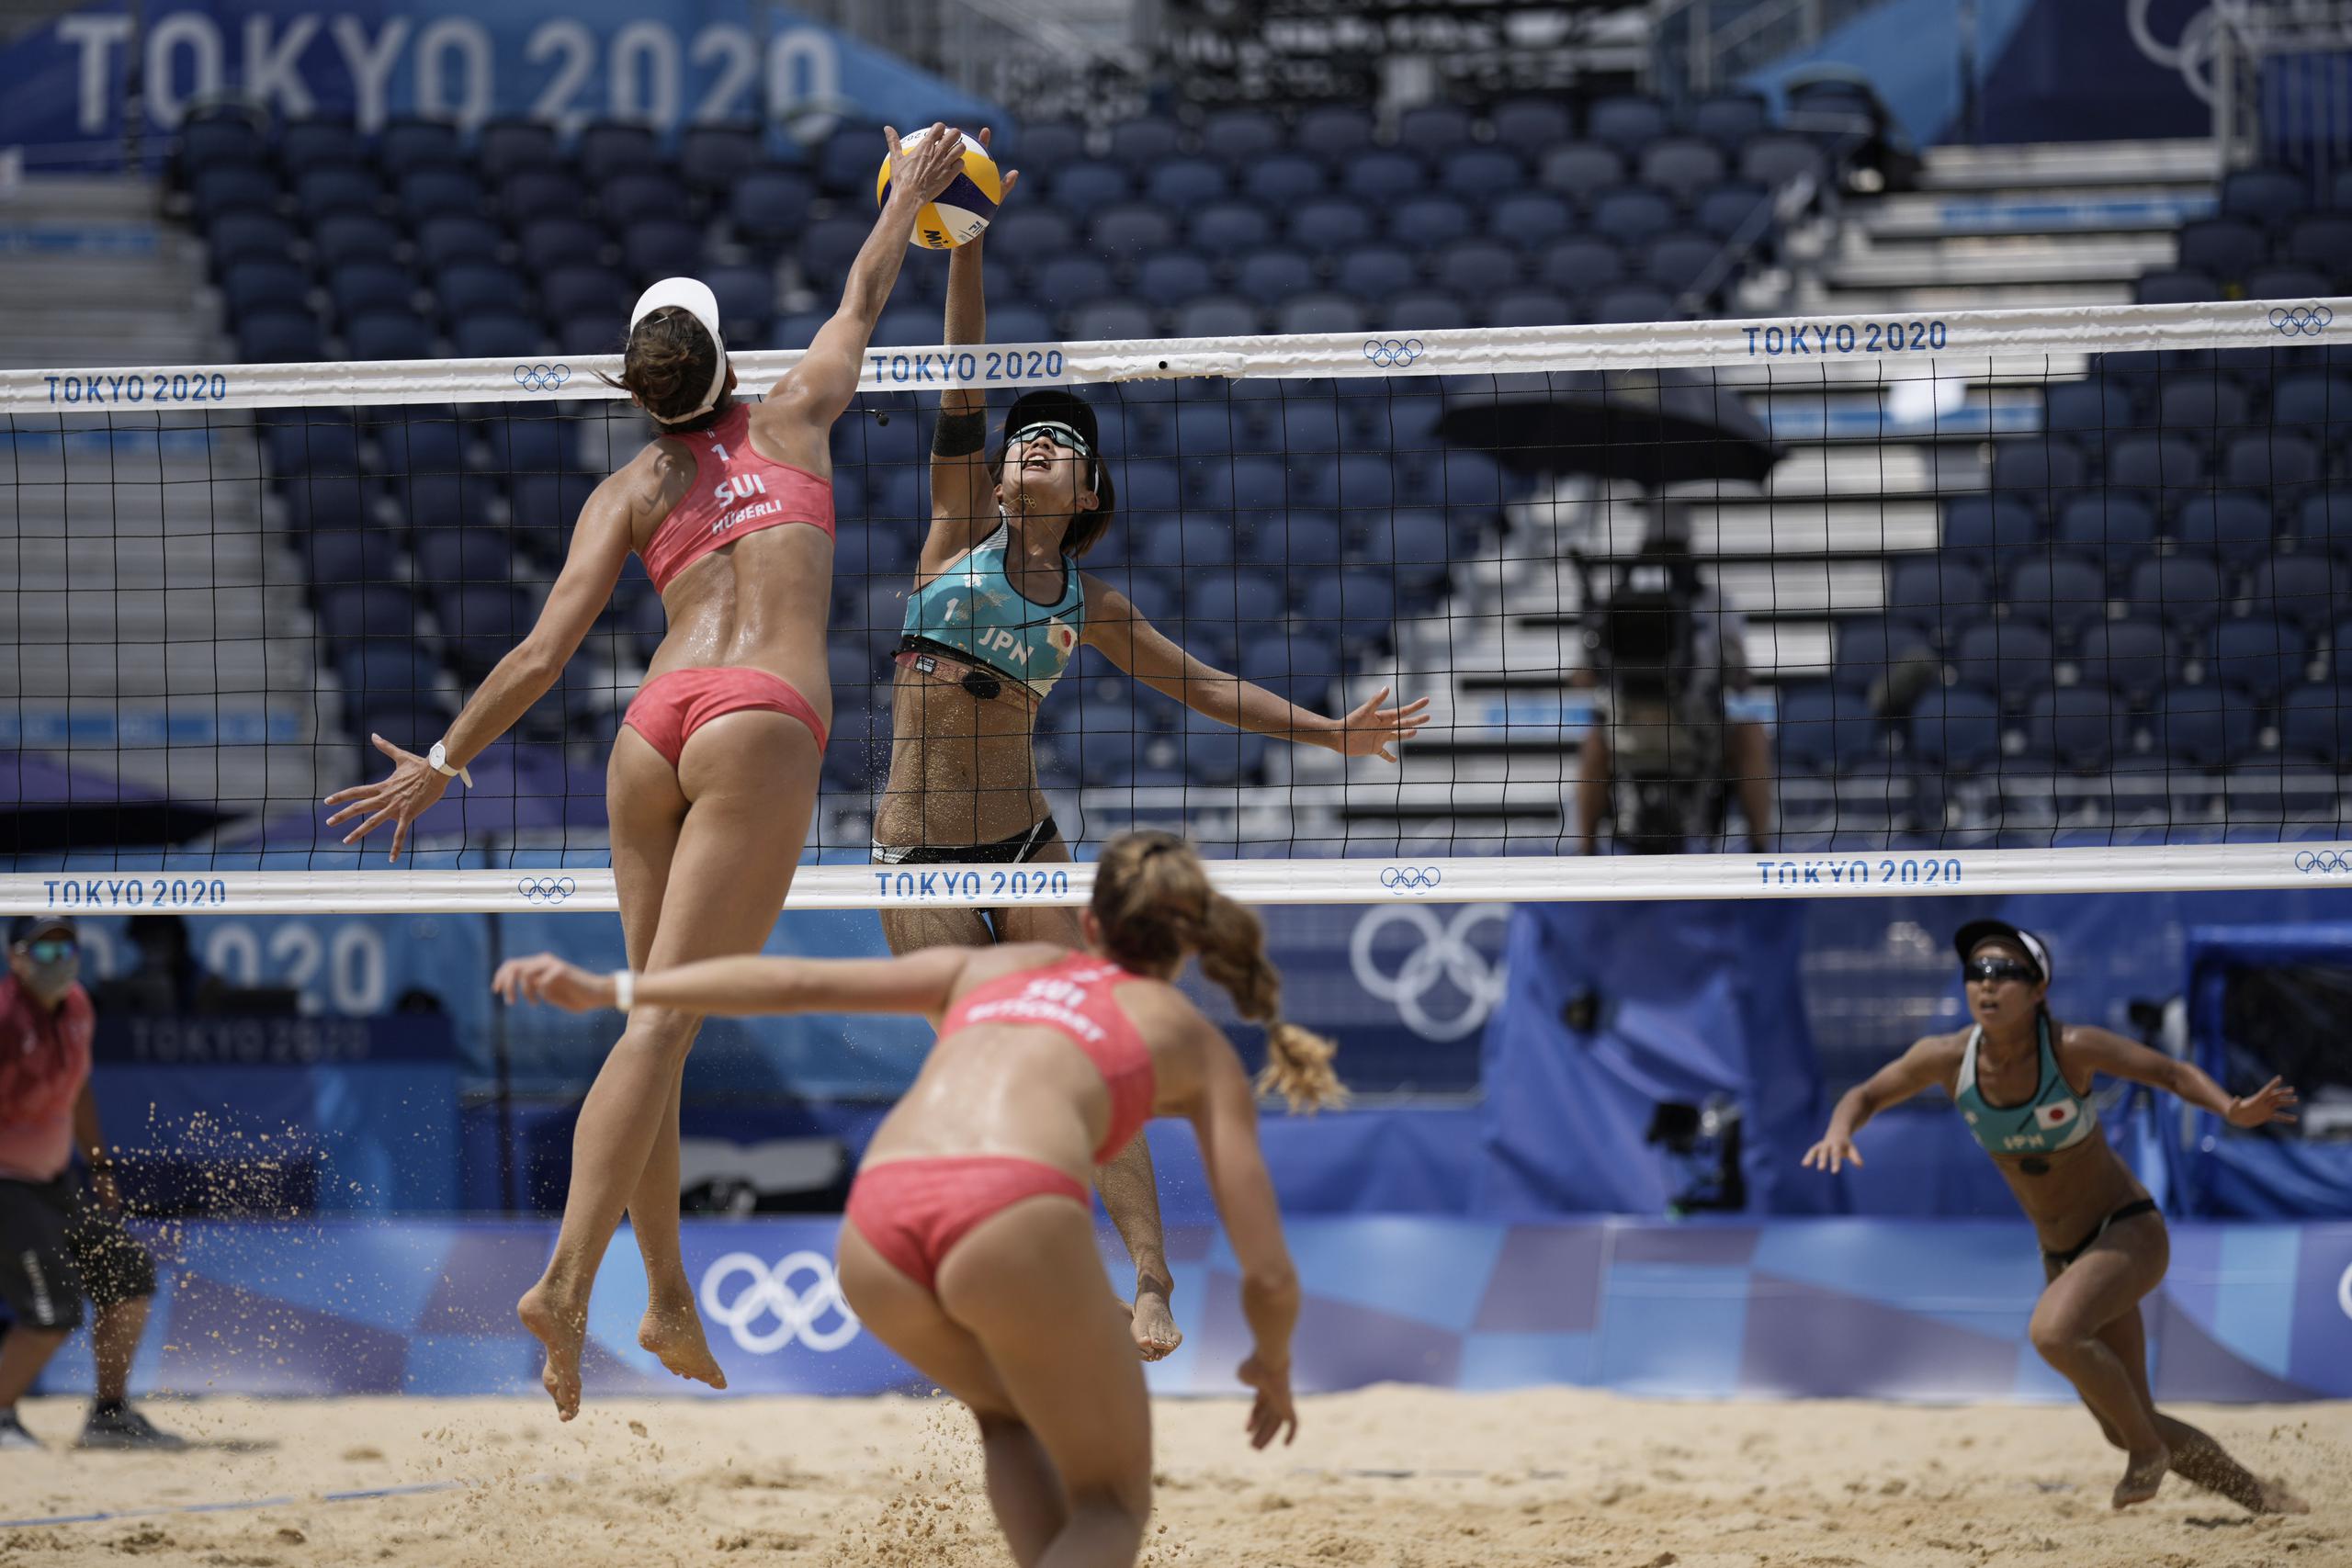 Tanja Huberli, a la izquierda, de Suiza, golpea un balón mientras Miki Ishi, de Japón, intenta bloquearlo como parte e la acción del voleibol de playa de los Juegos Olímpicos Tokio 2020.